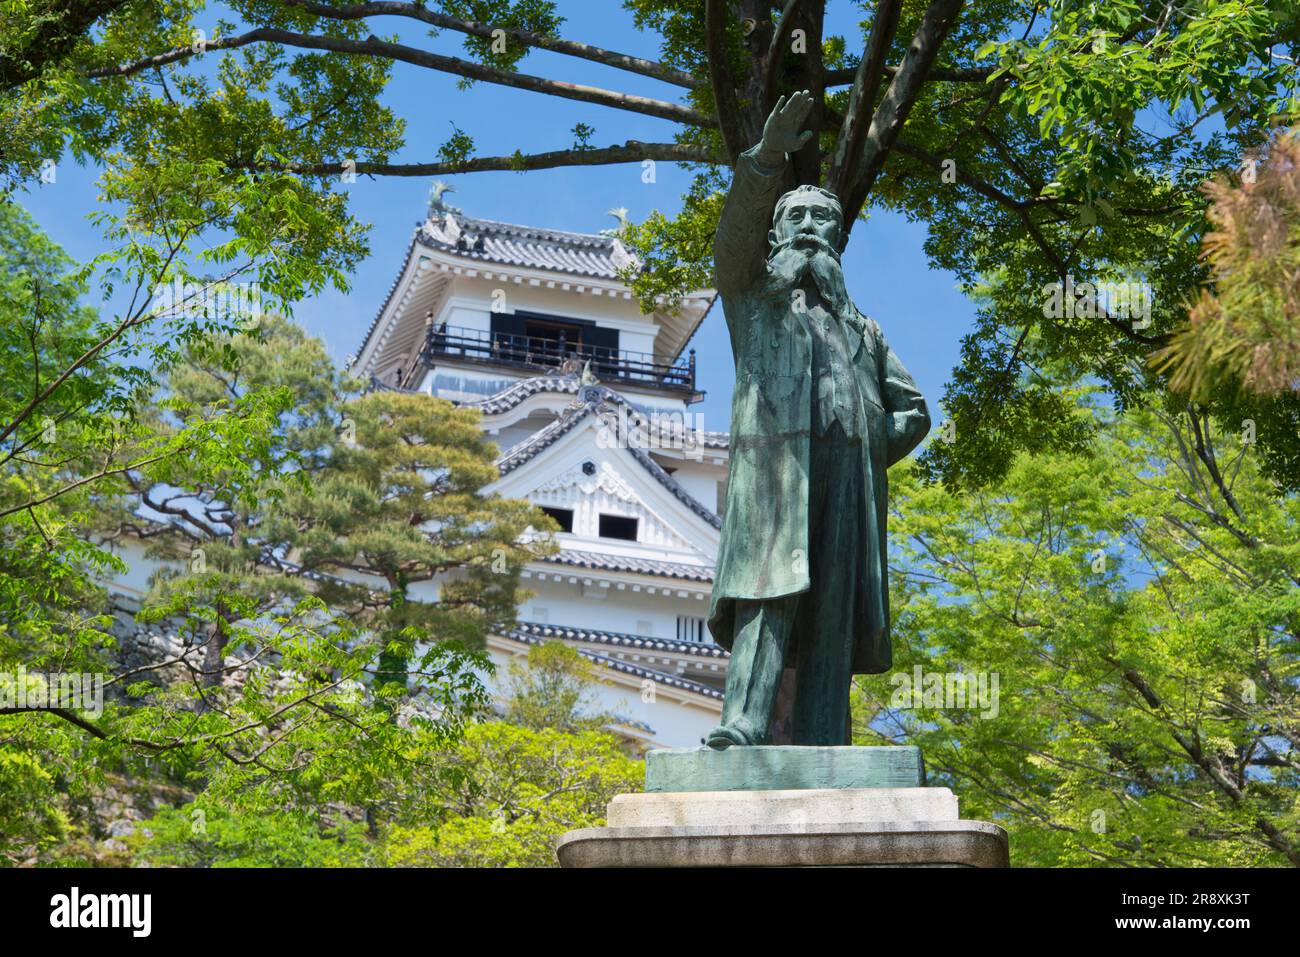 Kochi Castle and Statue of Taisuke Itagaki Stock Photo